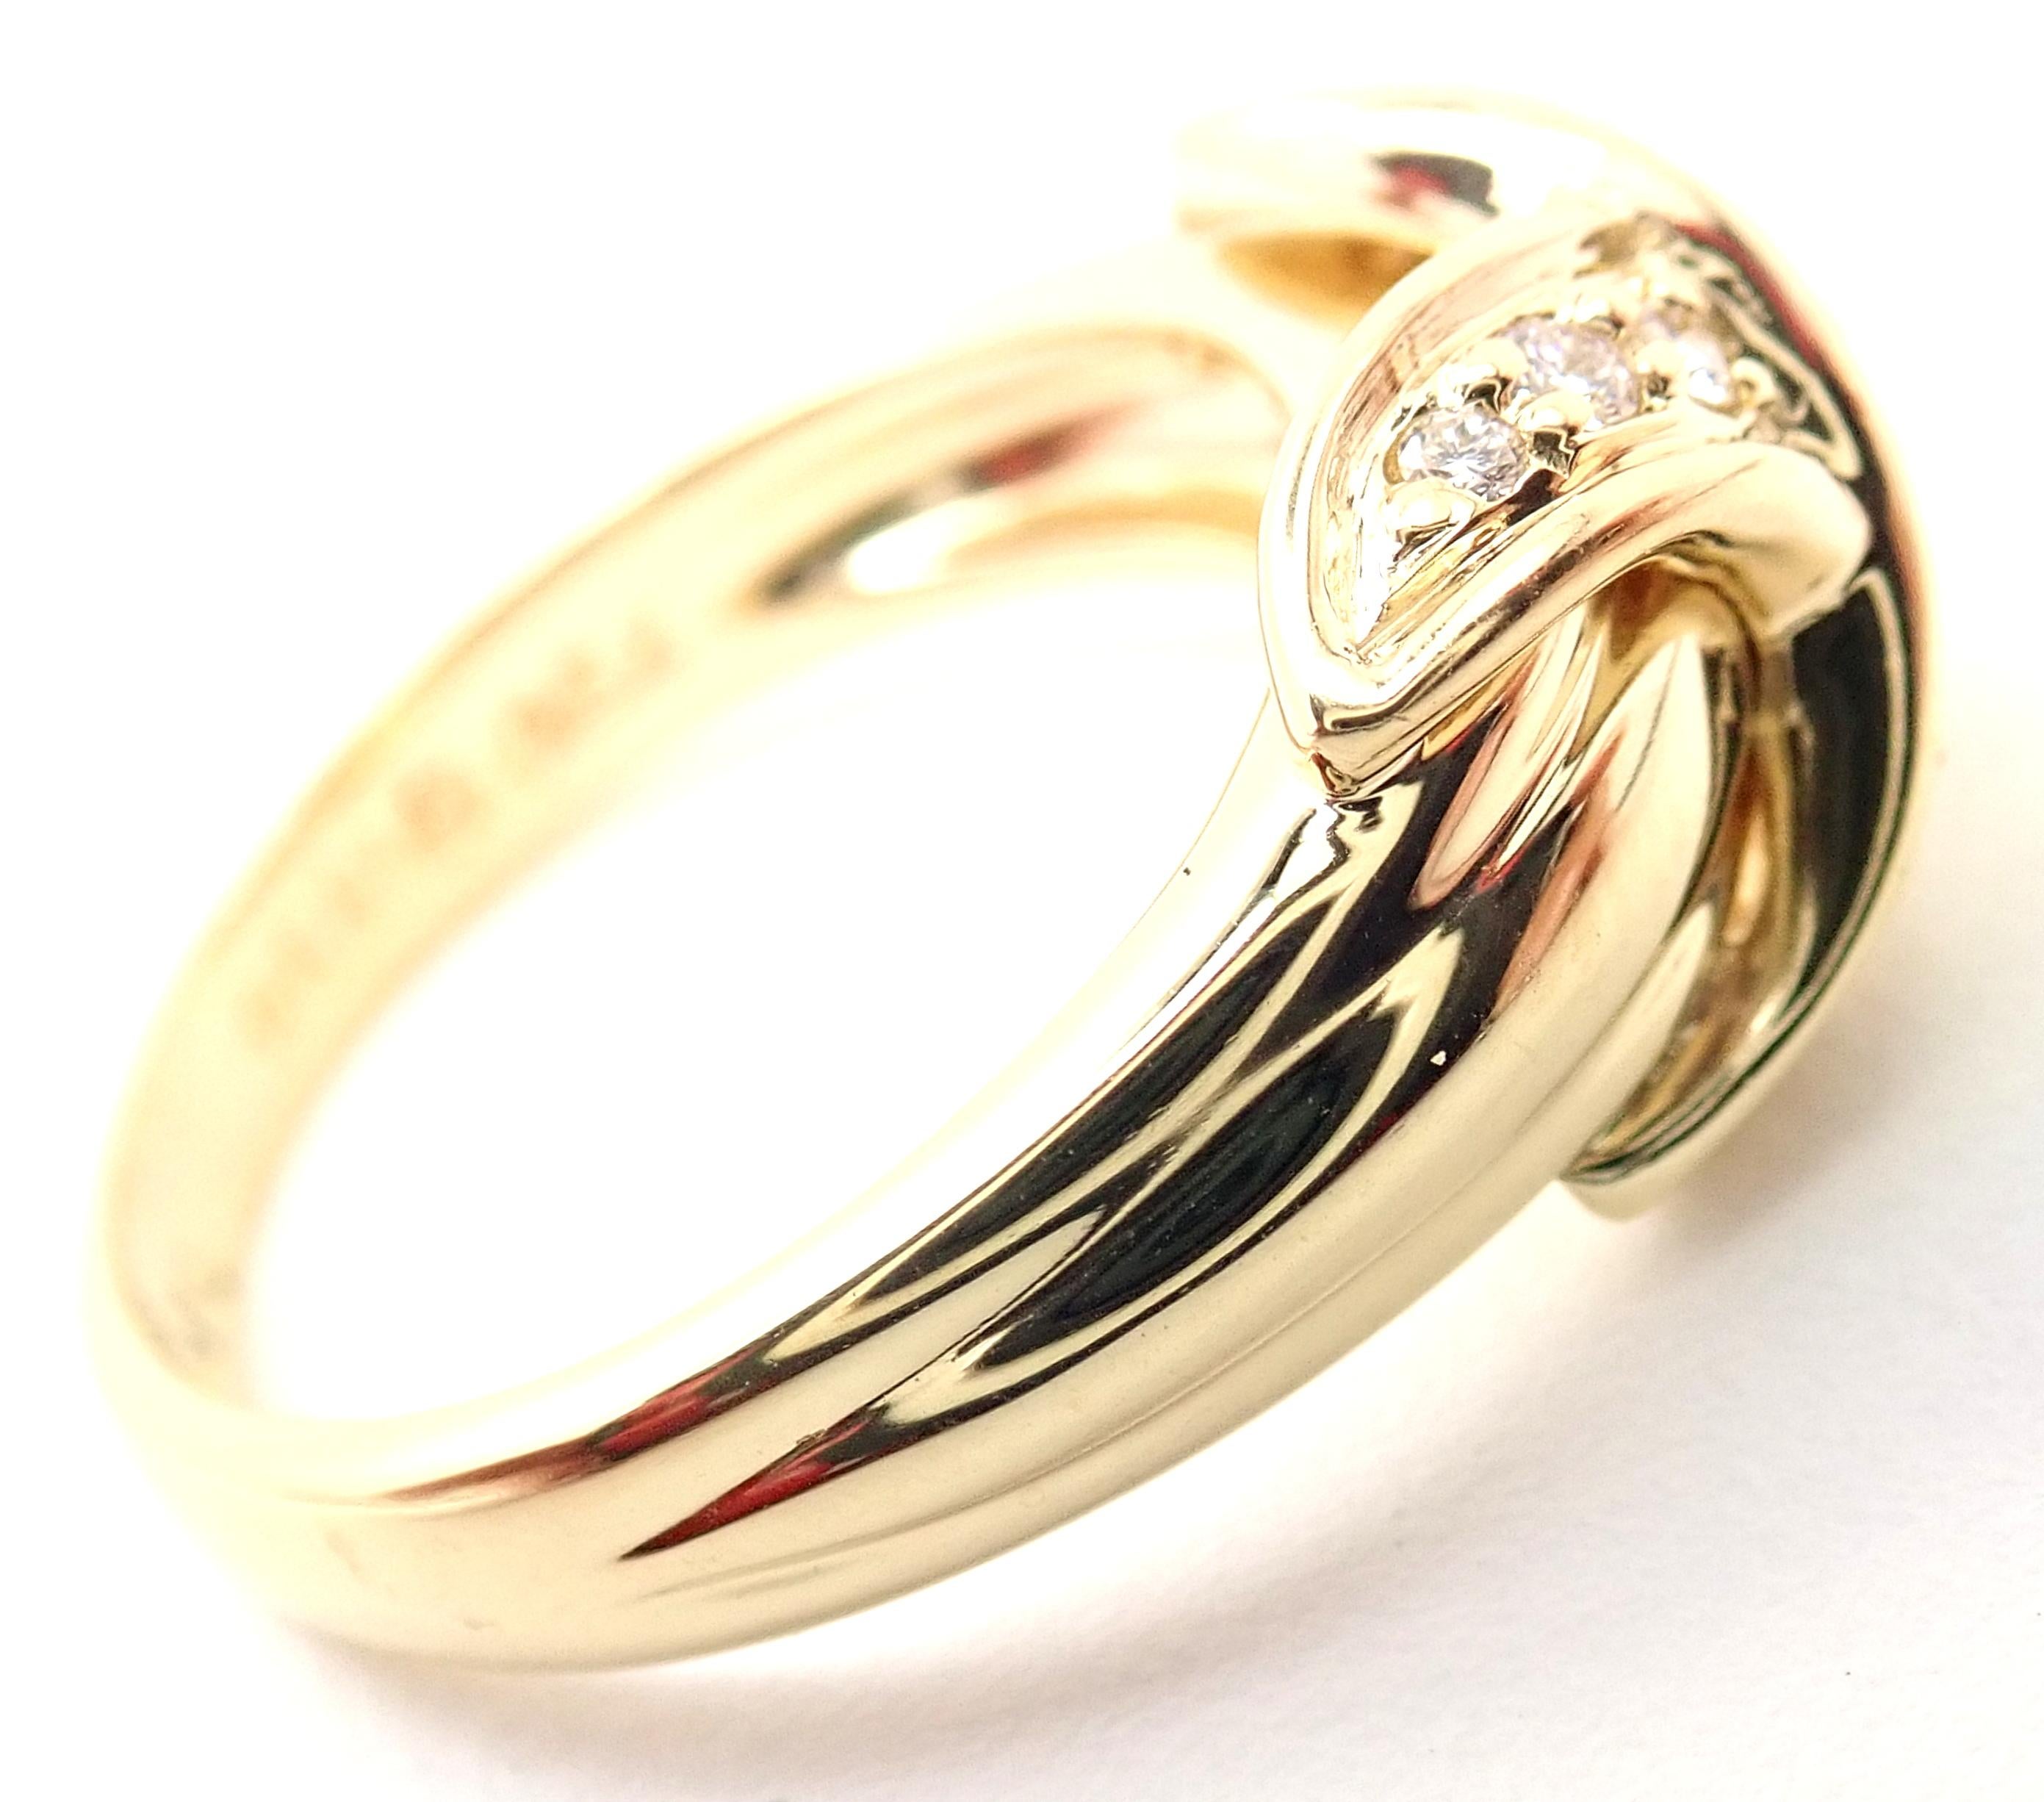 18k Gelbgold Diamant X Band Ring von Tiffany & Co.
Mit 14 runden Diamanten im Brillantschliff, Reinheit VS1, Farbe G, Gesamtgewicht ca. 0,50ctw
Einzelheiten: 
Ring Größe: 5 3/4
Gewicht: 6,9 Gramm
Breite: Die obere Breite beträgt 10 mm
Gestempelte